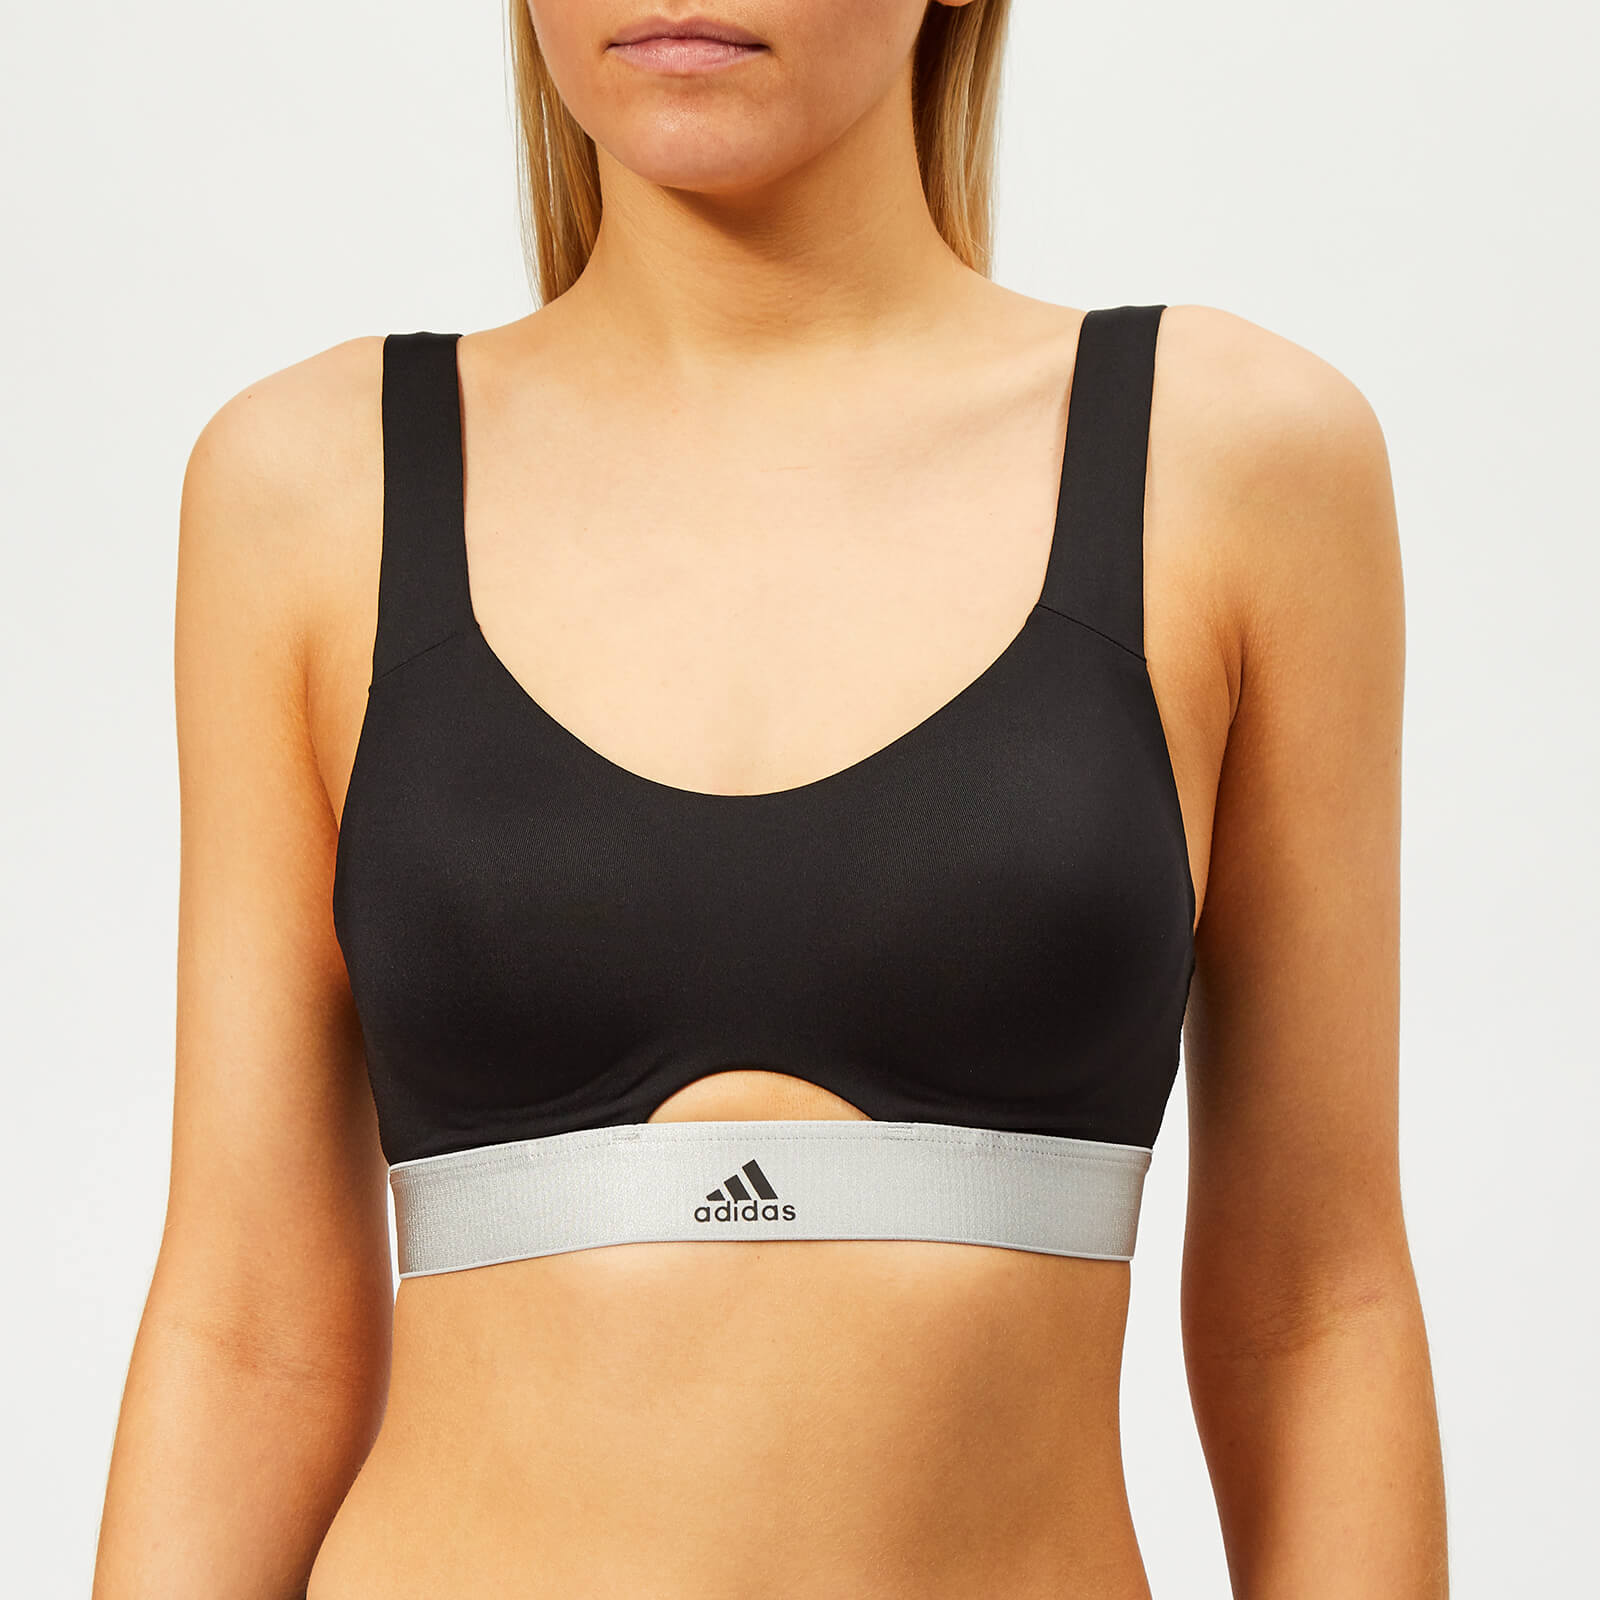 Adidas Women's Stronger for It Soft Bra - Black - 32C - Black